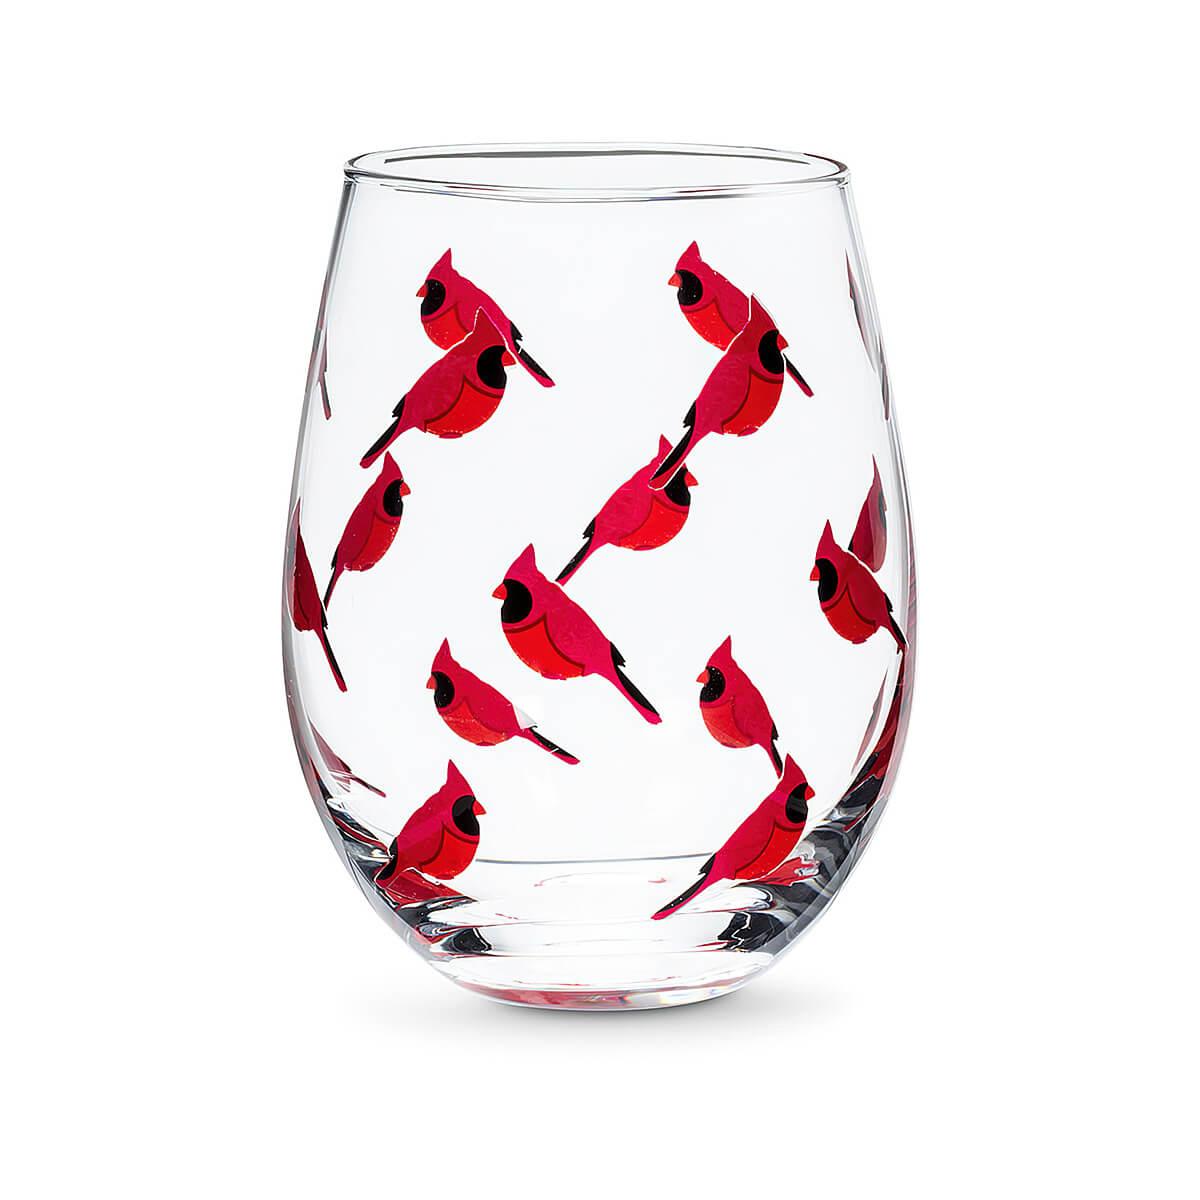 Cardinal Wine 